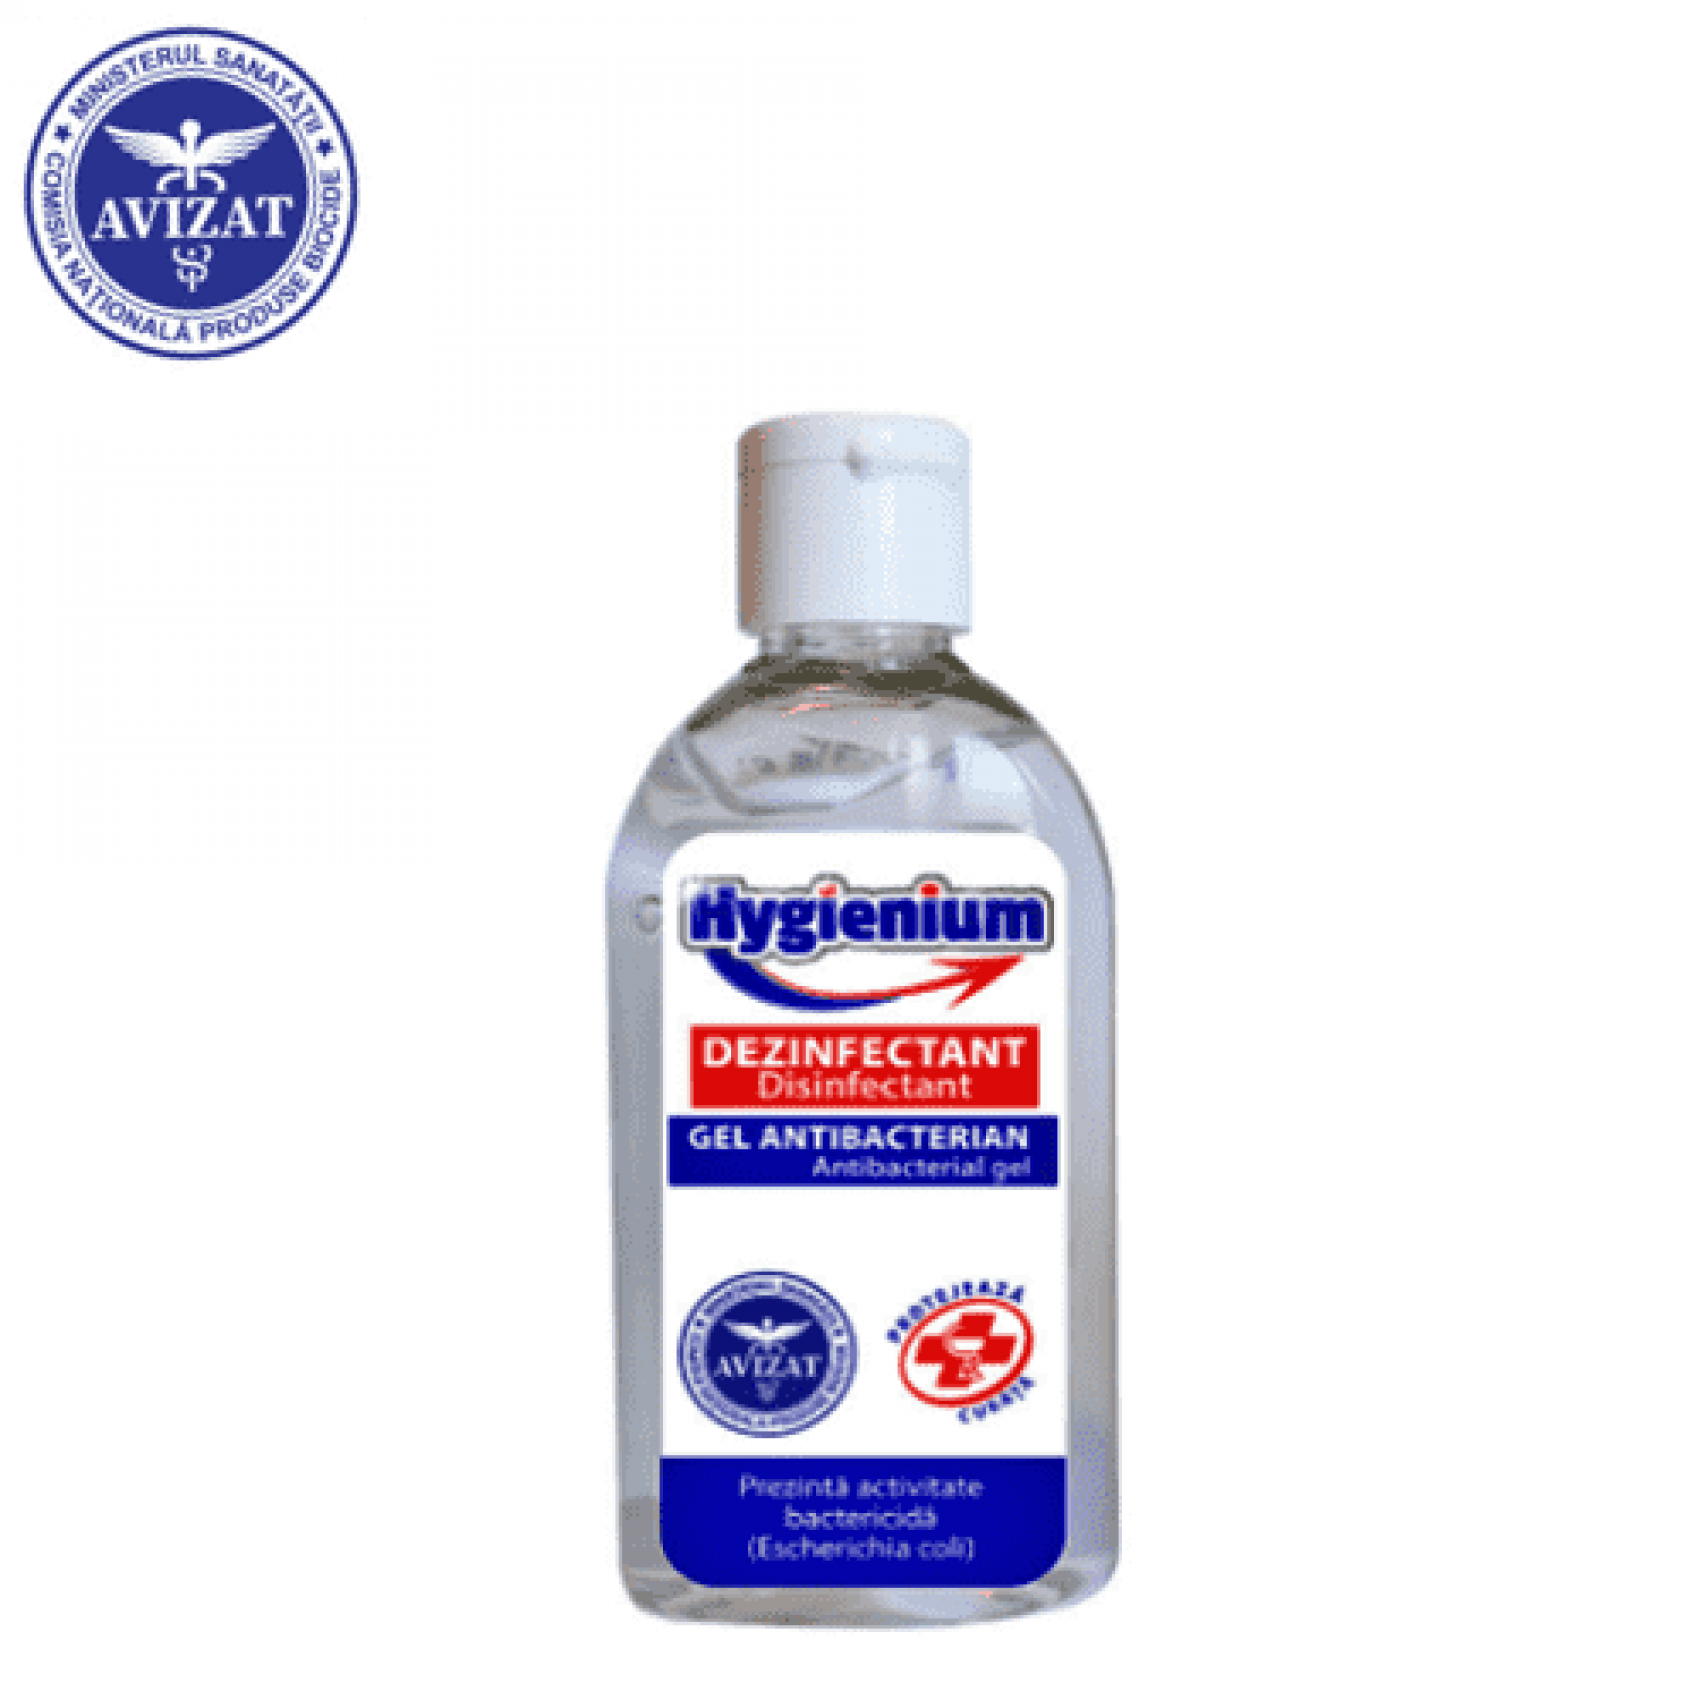 Hygienium dezinfectant virucid gel pentru maini - 85 ml